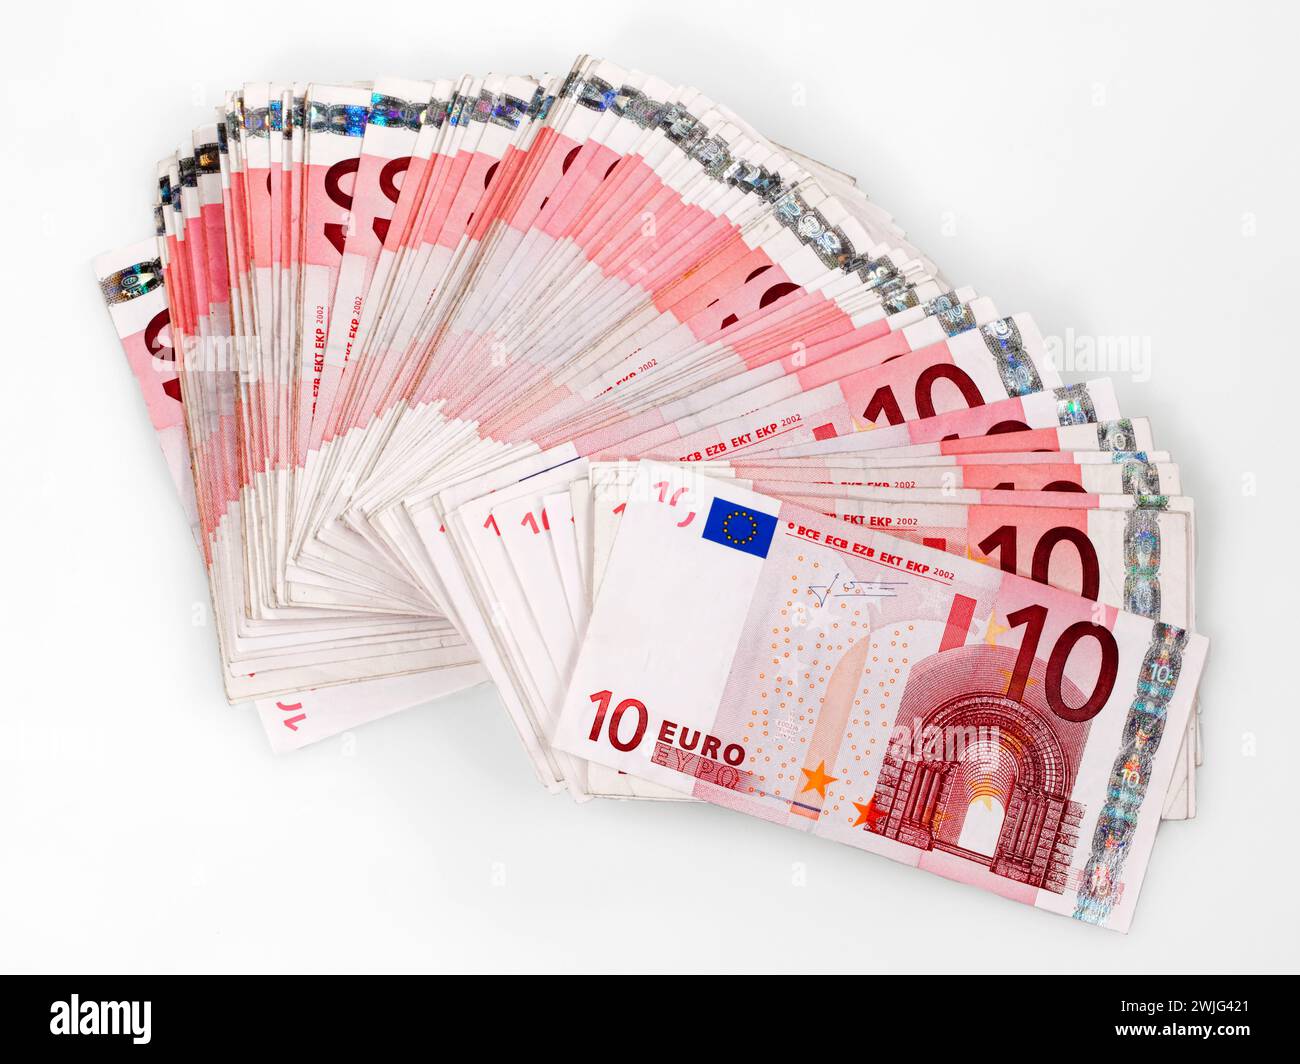 Many 10 Euro banknotes, Germany, Europe Stock Photo